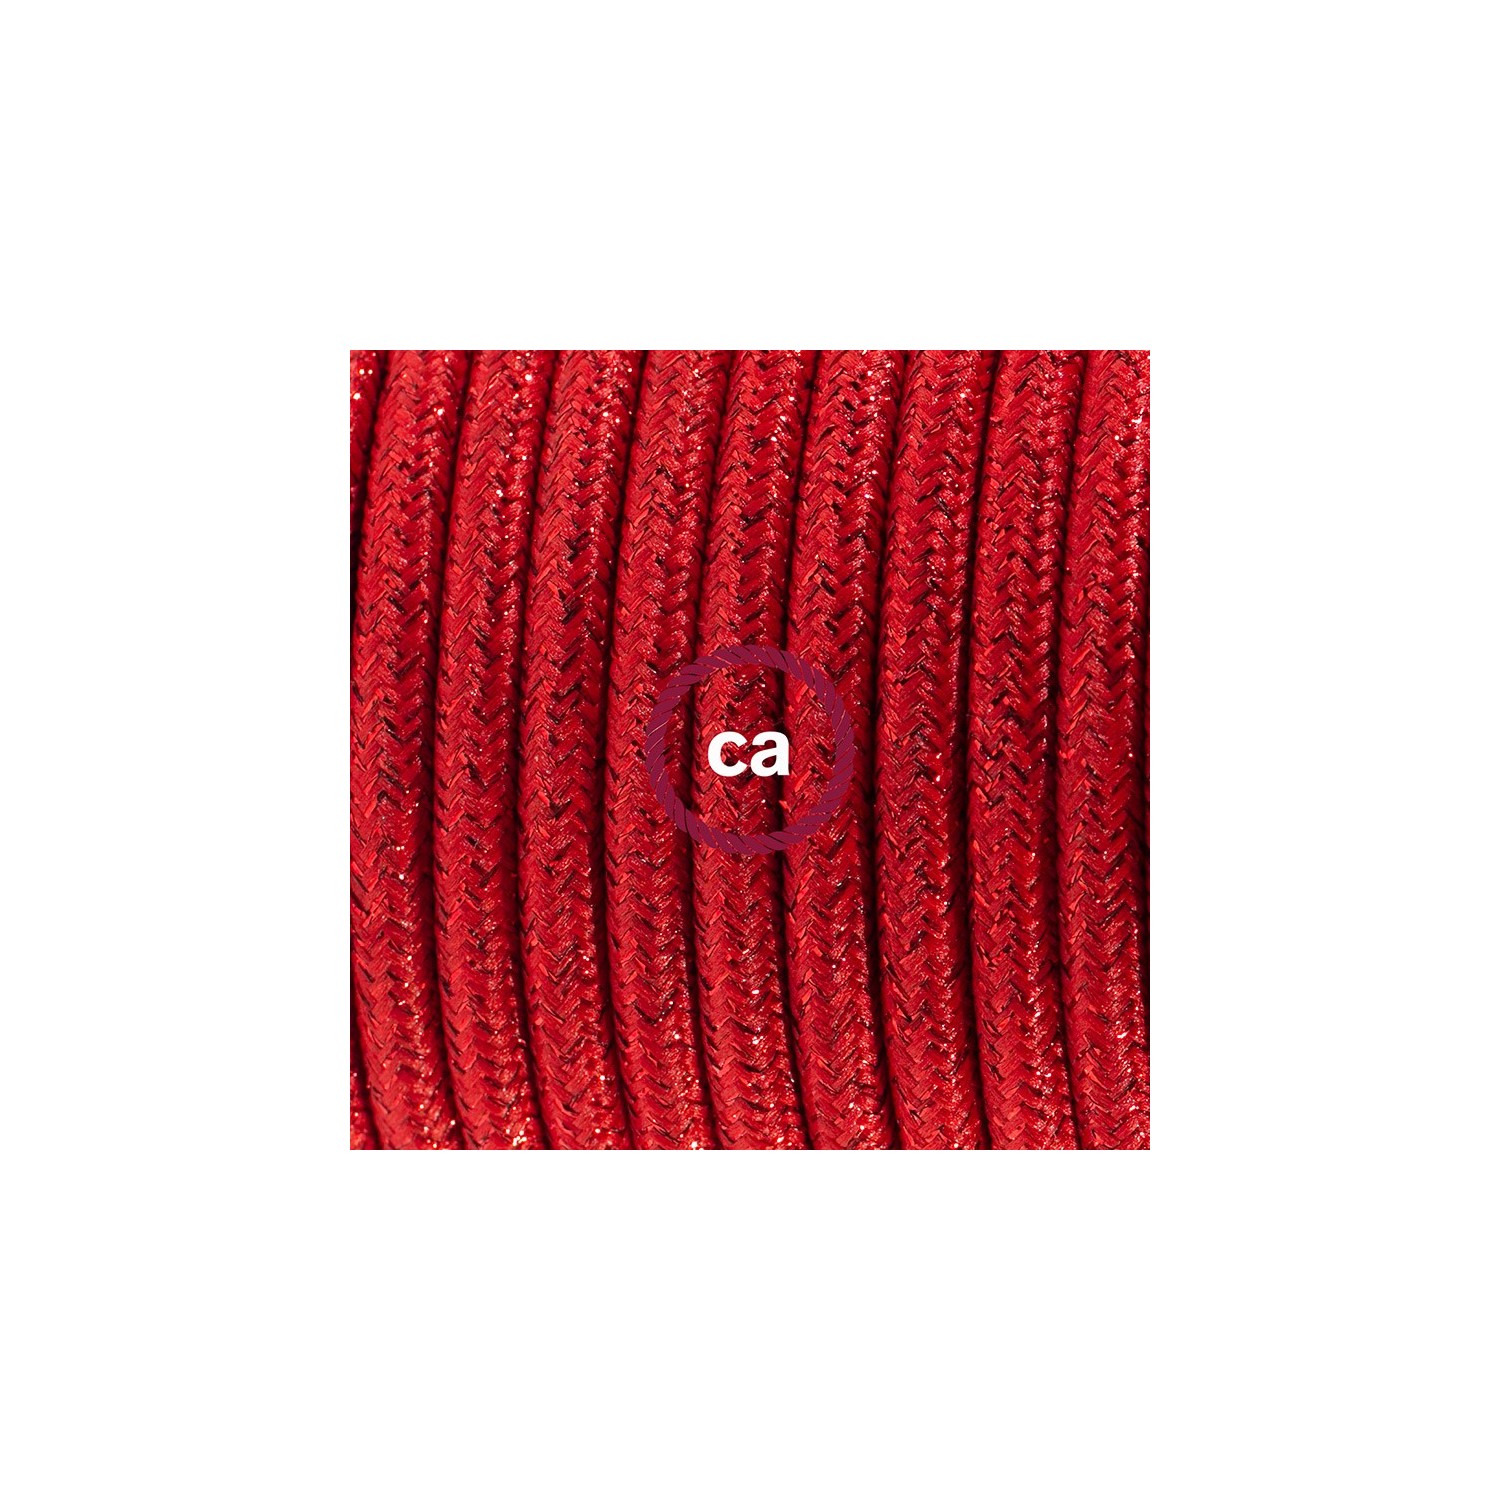 Sladdställ med fotströmbrytare, RL09 Röd Viskos 3 m. Välj färg på strömbrytare och kontakt